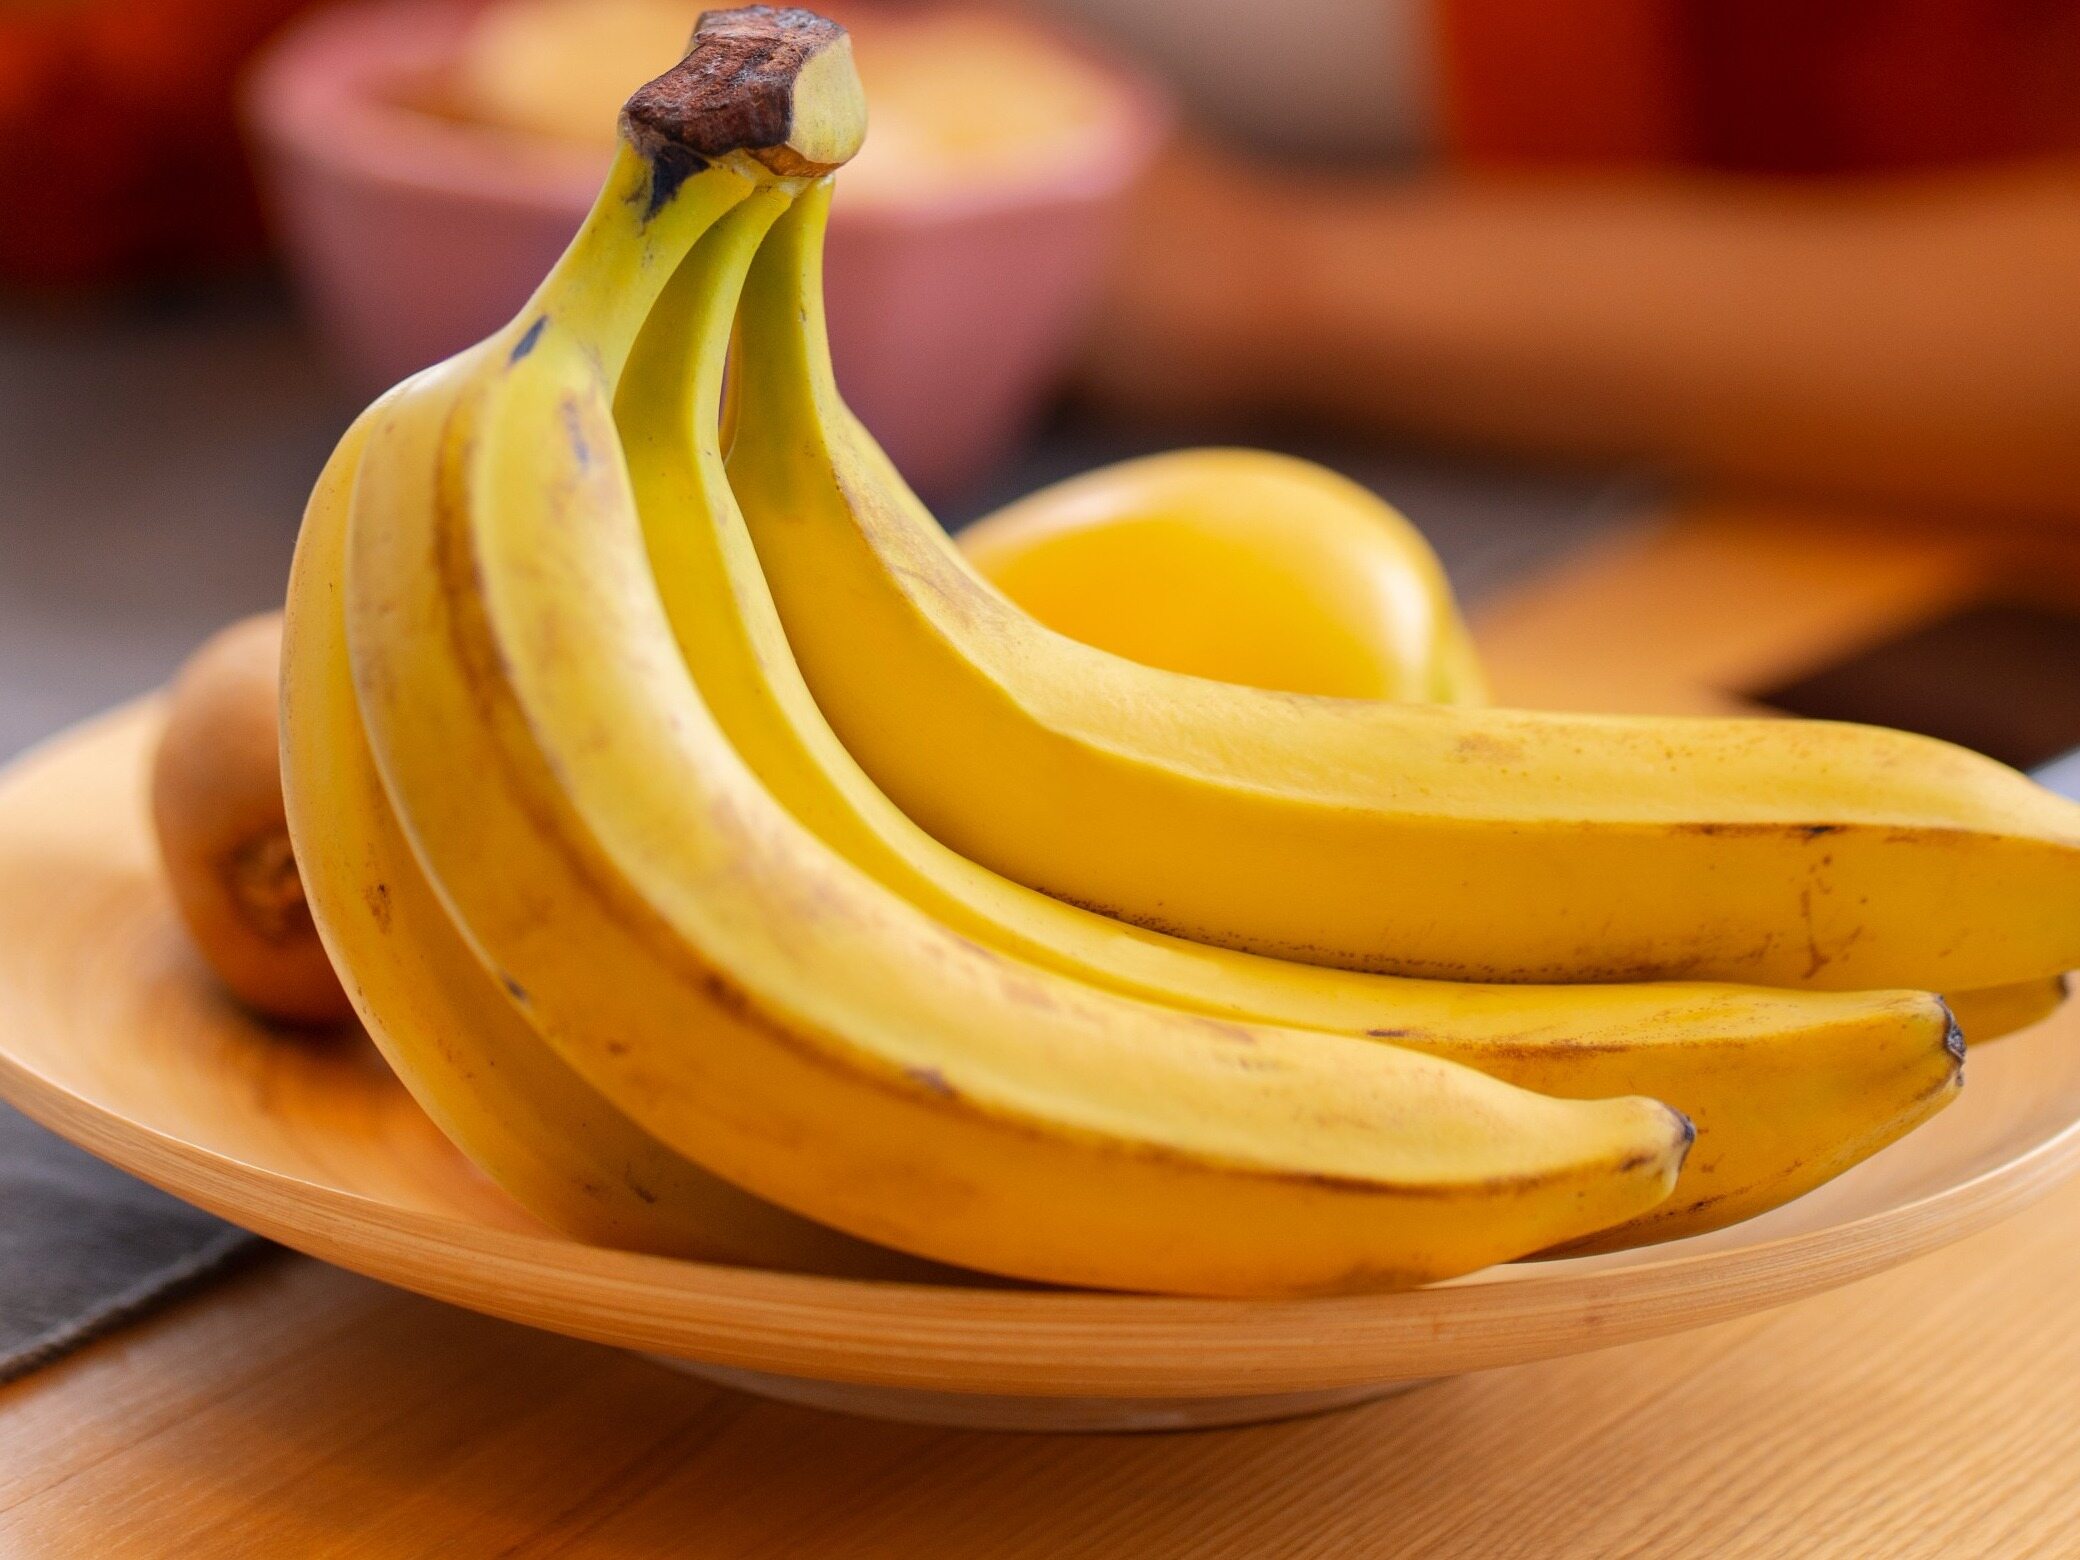 zrób to przed obraniem bananów. w przeciwnym razie możesz sobie zaszkodzić